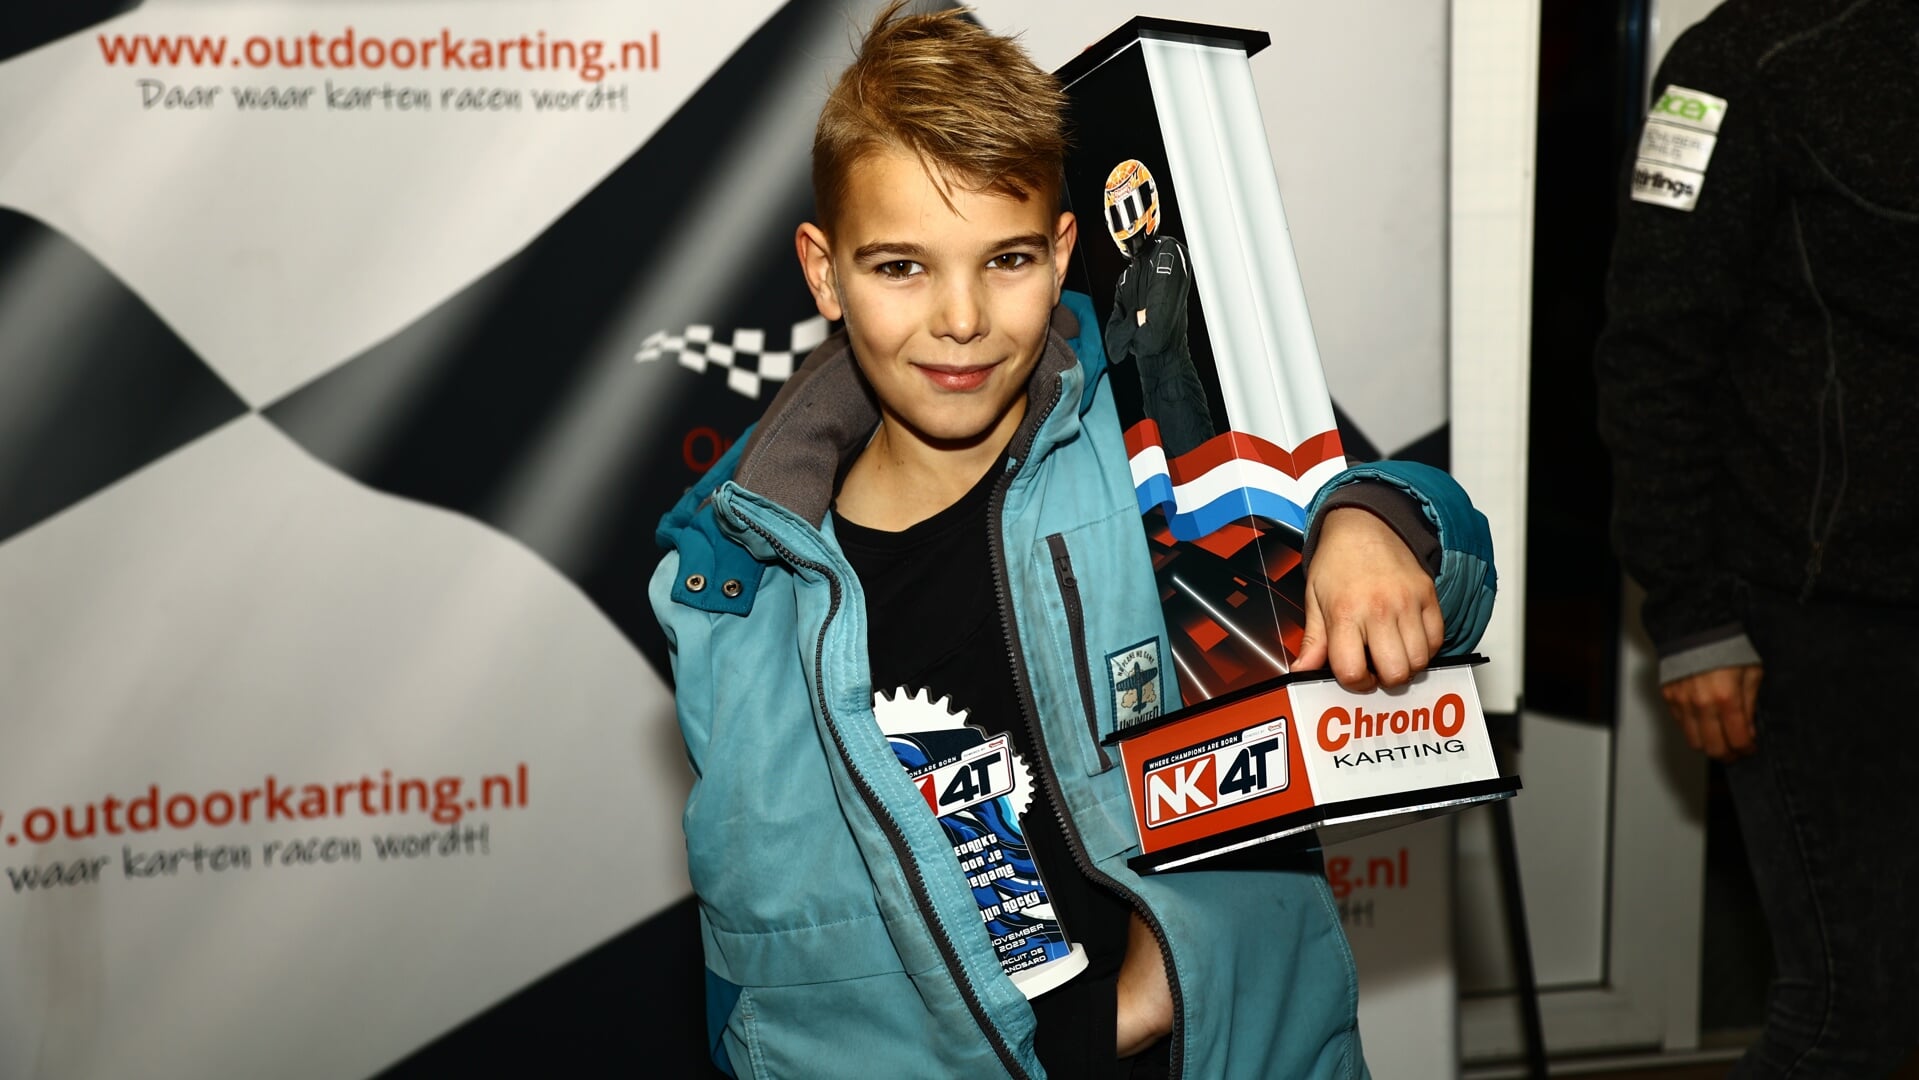 Ondanks een gebroken sleutelbeen is Fynn Jonkman toch Nederlands kampioen karten geworden.